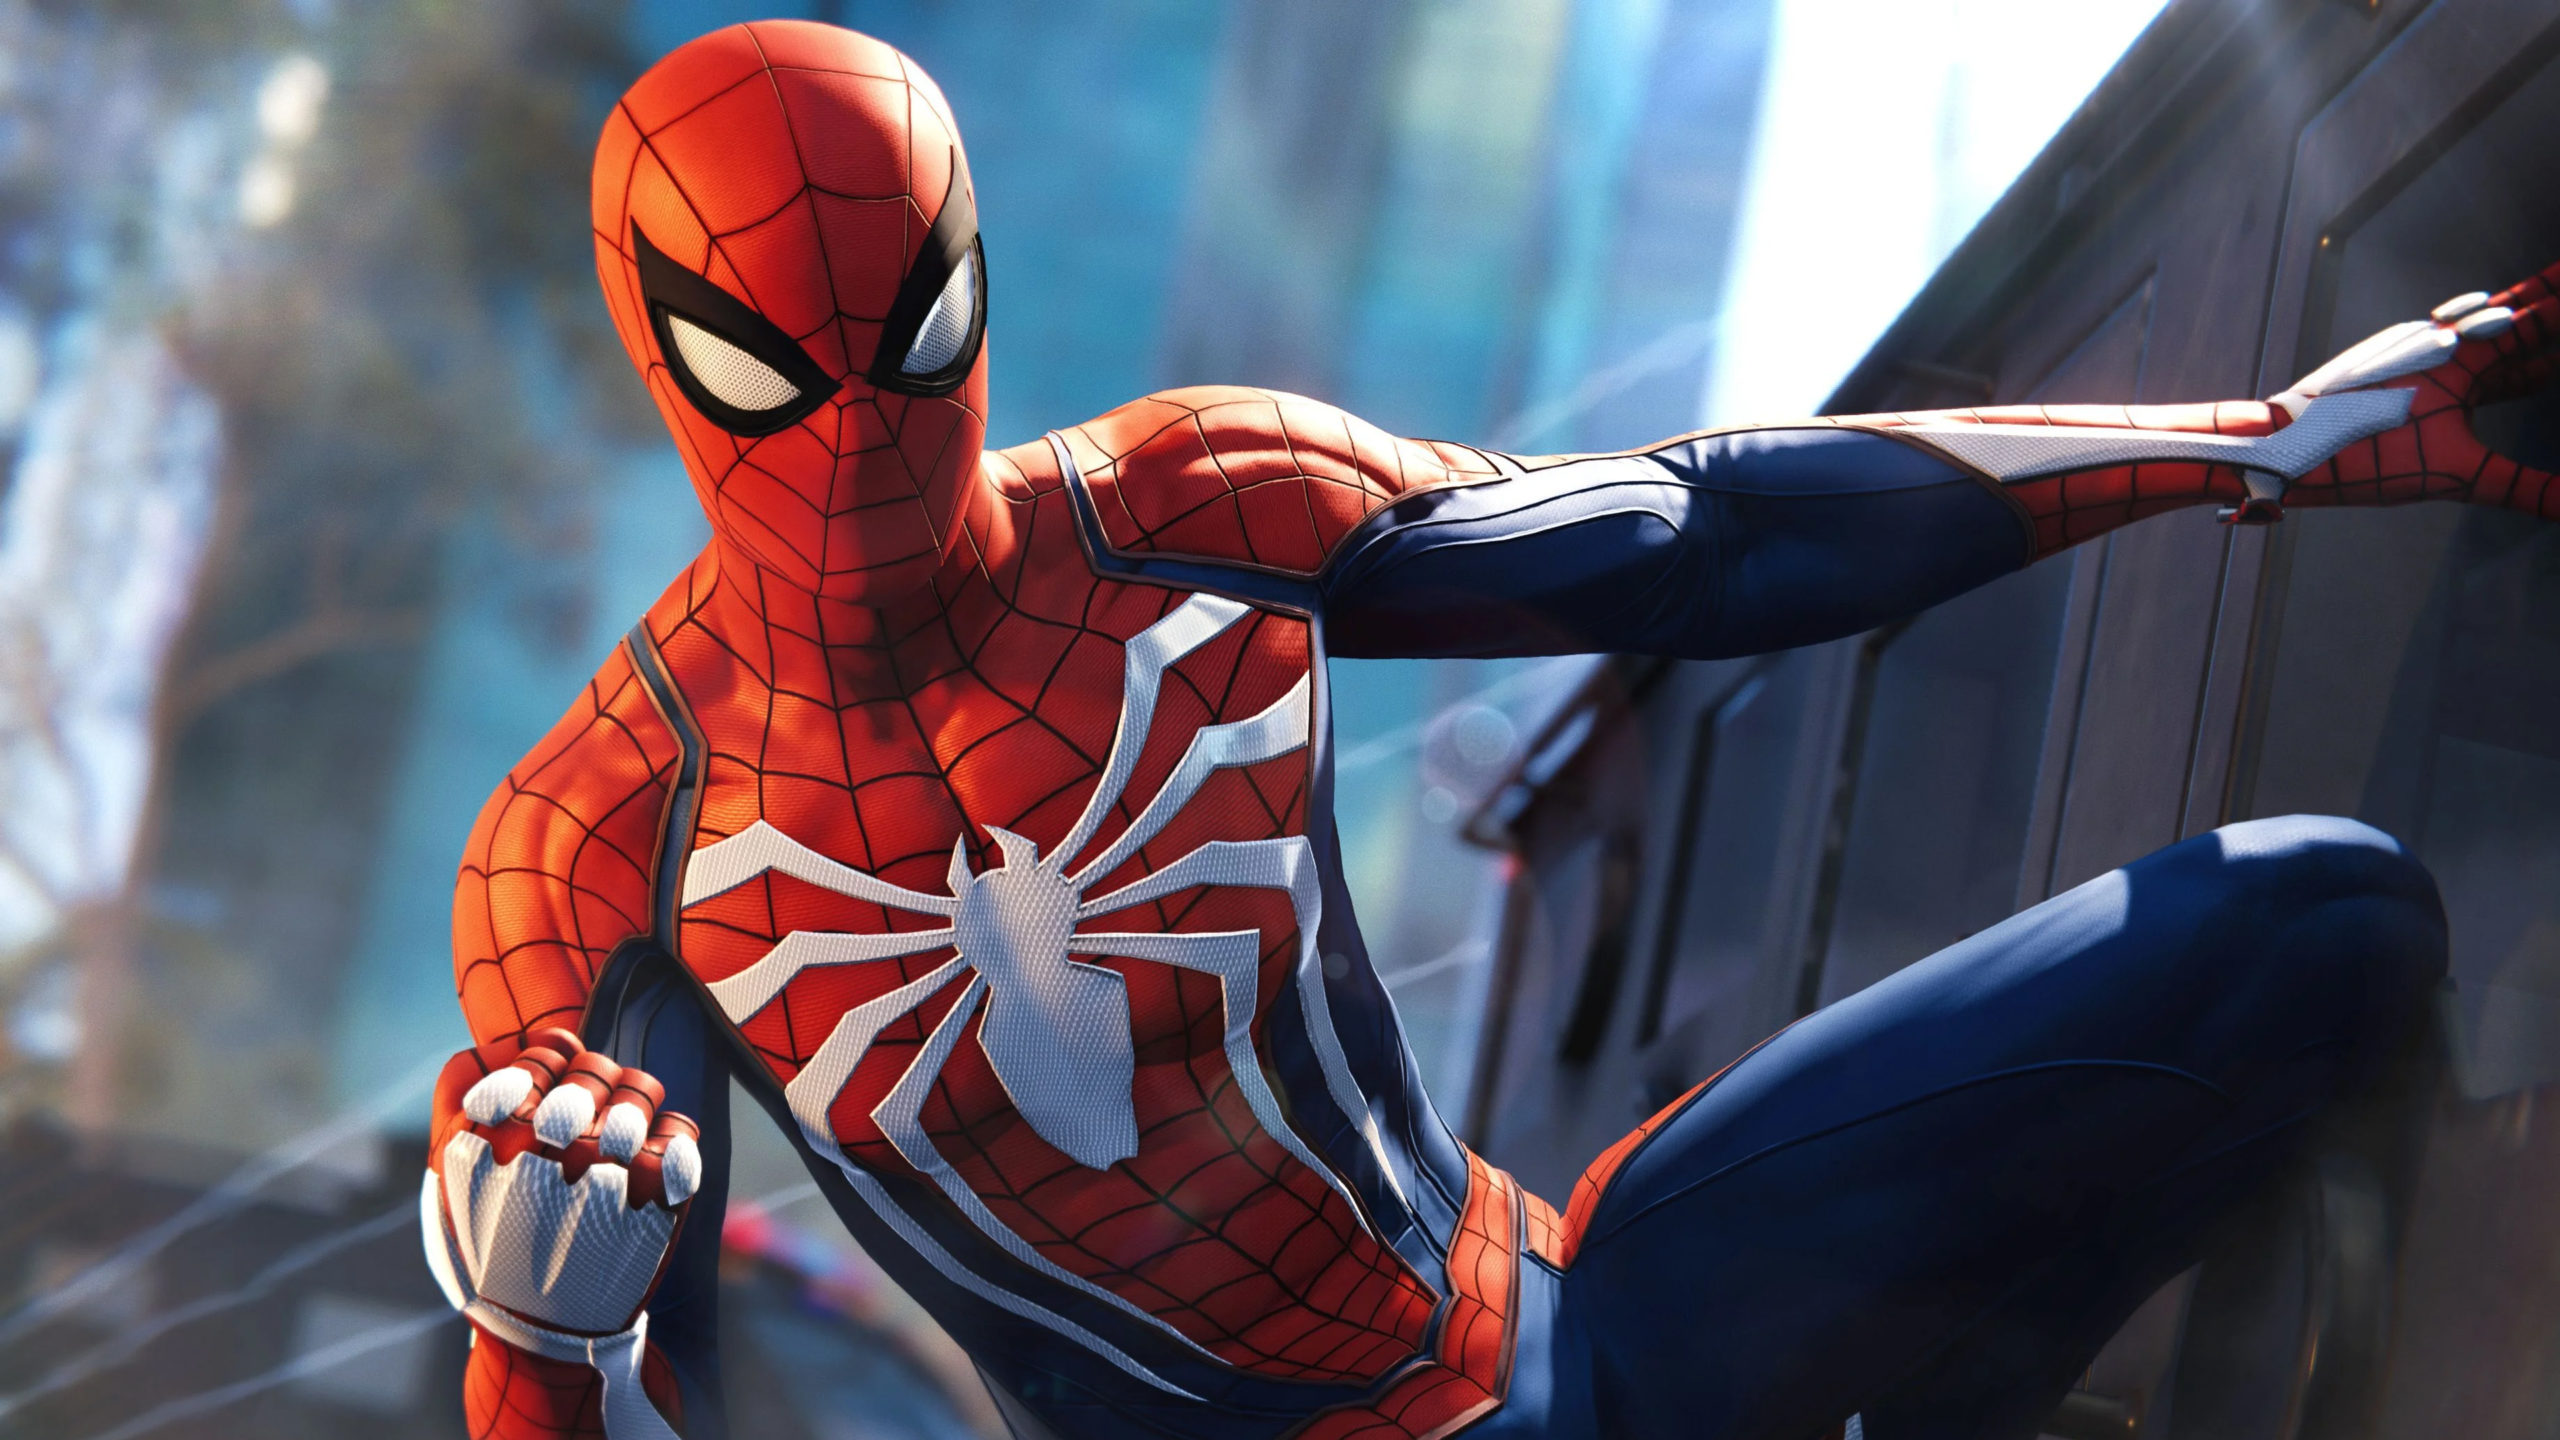 Marvel's Spider-Man Remastered PC má otimização, testamos com uma